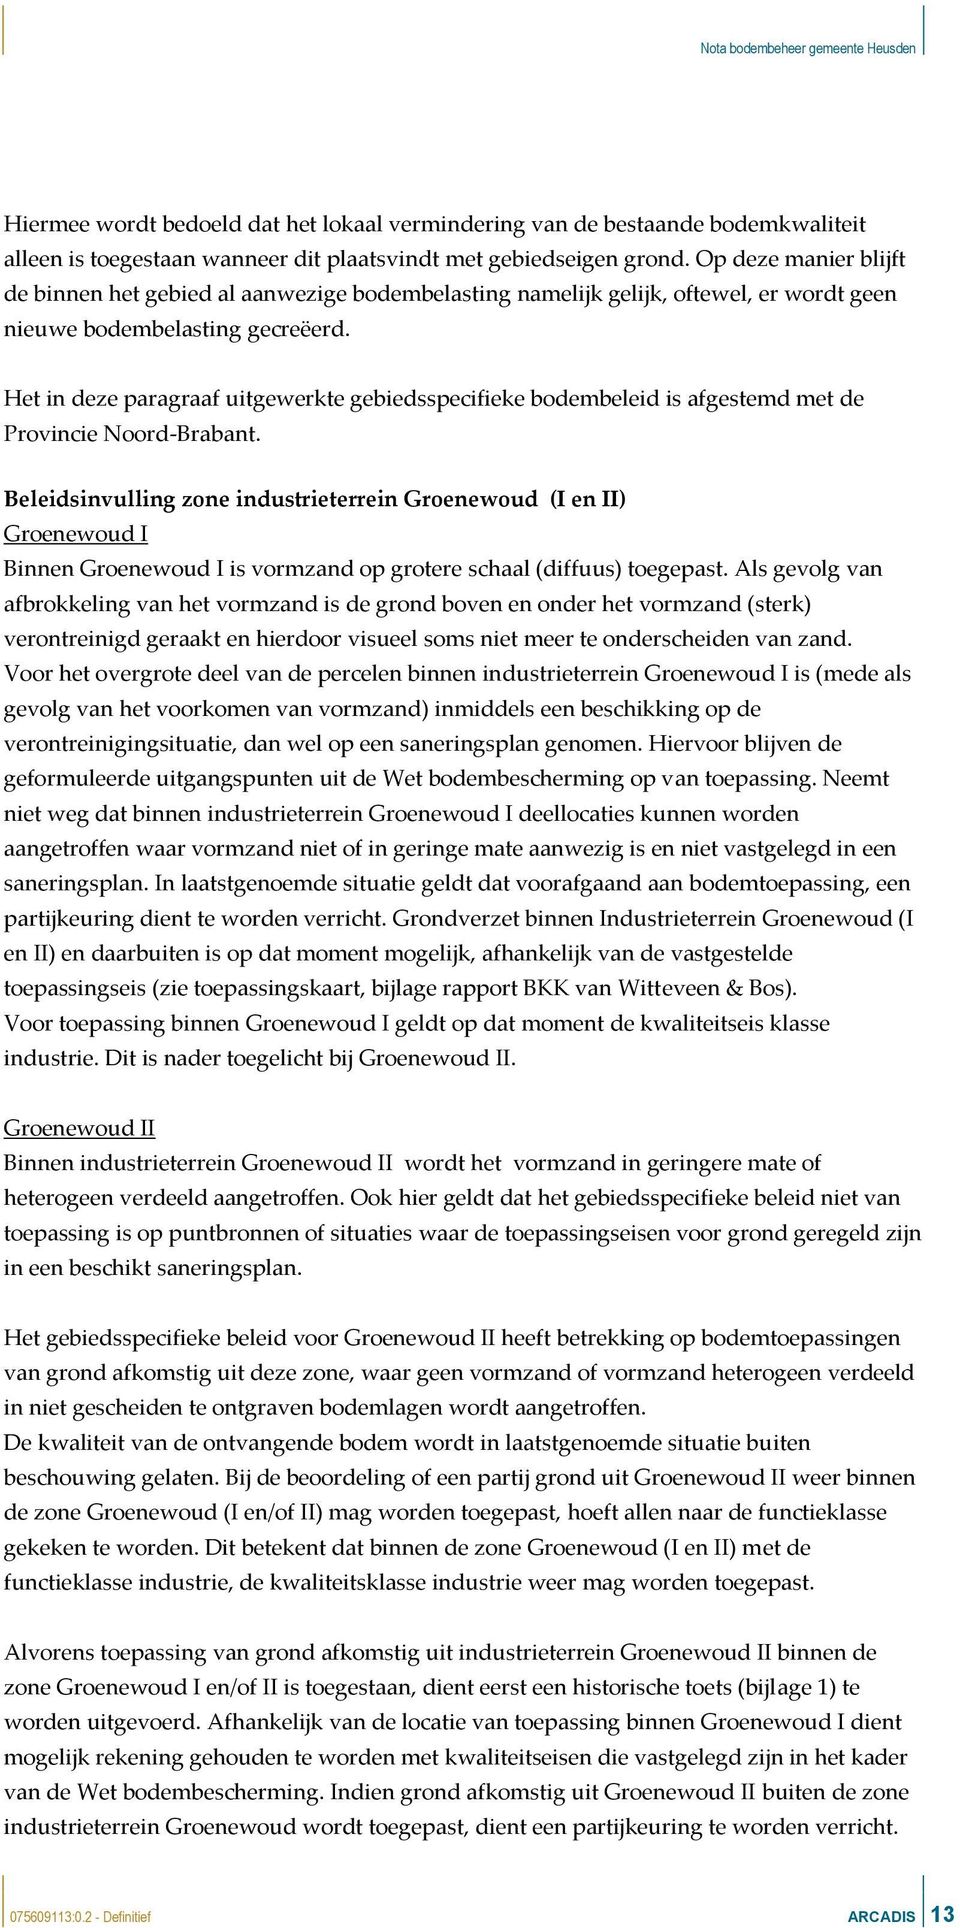 Het in deze paragraaf uitgewerkte gebiedsspecifieke bodembeleid is afgestemd met de Provincie Noord-Brabant.